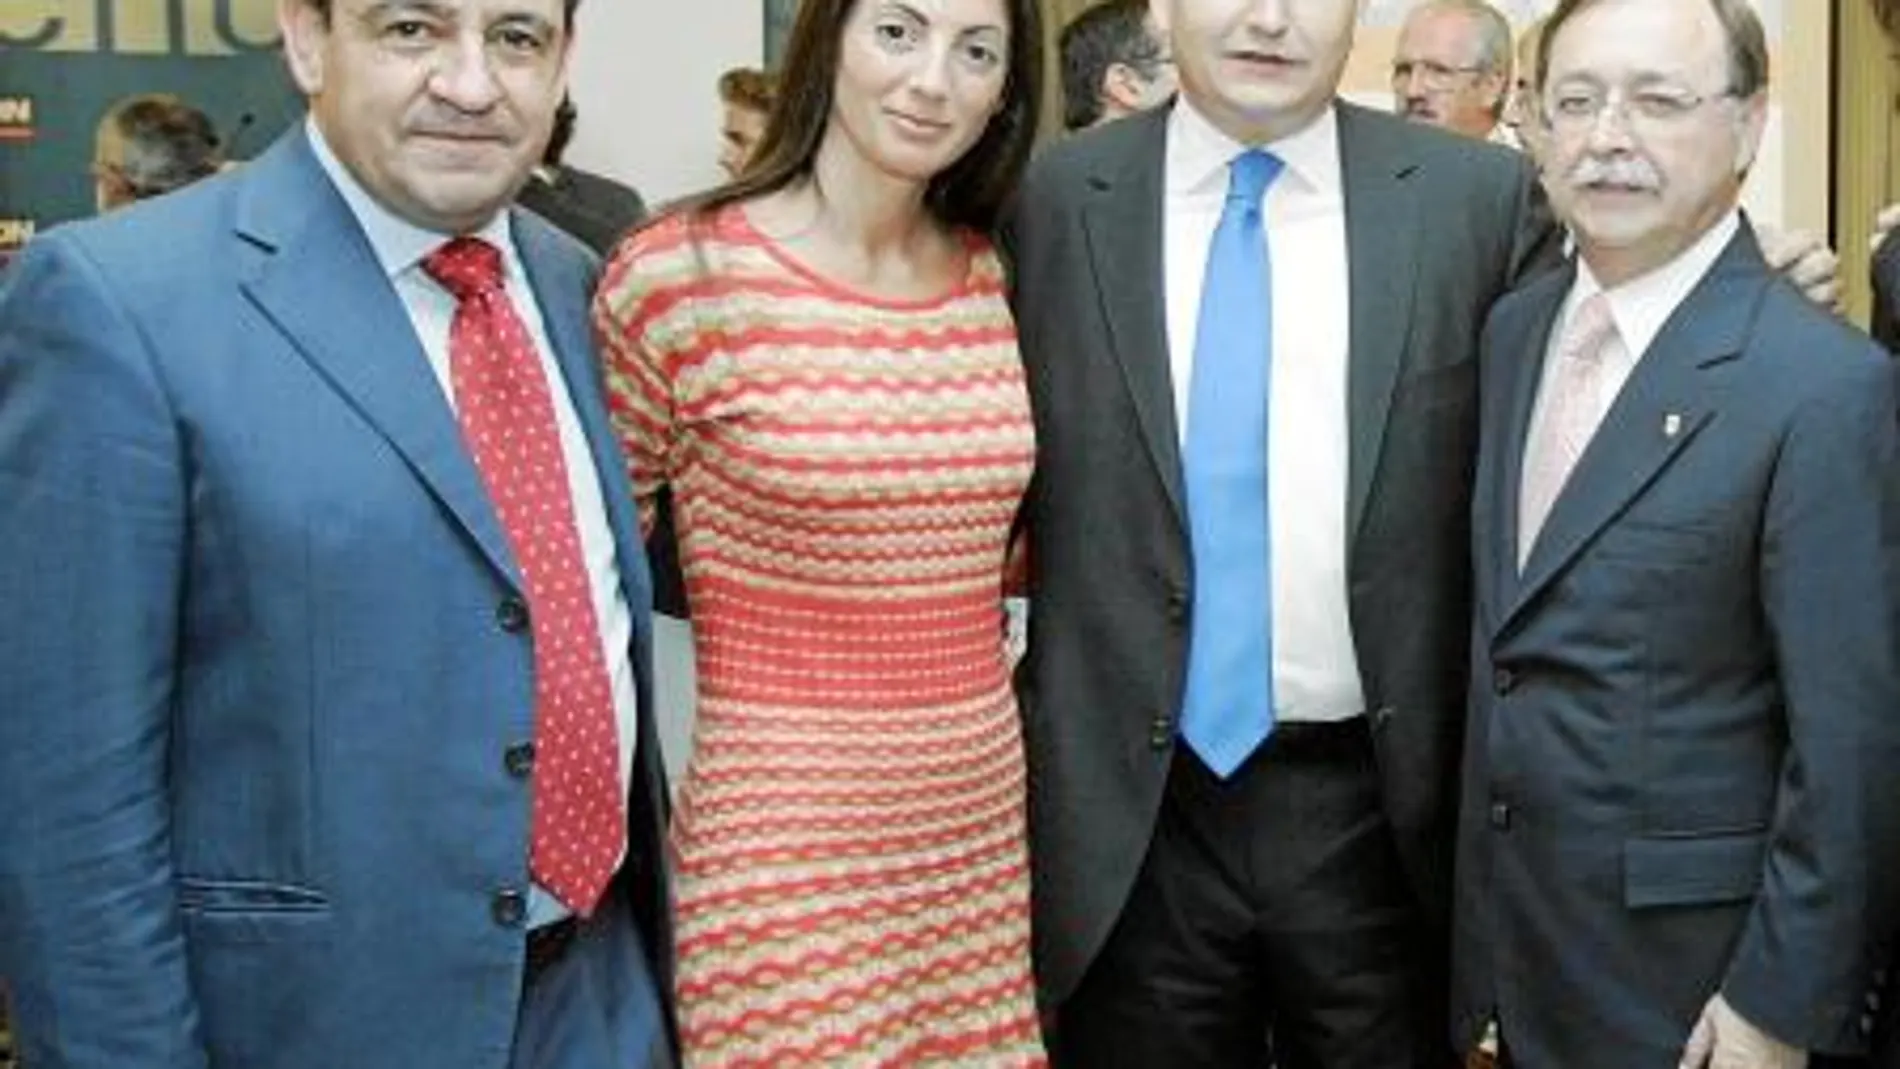 El presidente de Ceuta estuvo acompañado por numerosos representantes del Partido Popular. Al acto acudieron líderes andaluces como Antonio Sanz, secretario general del PP-A o Rosario Soto